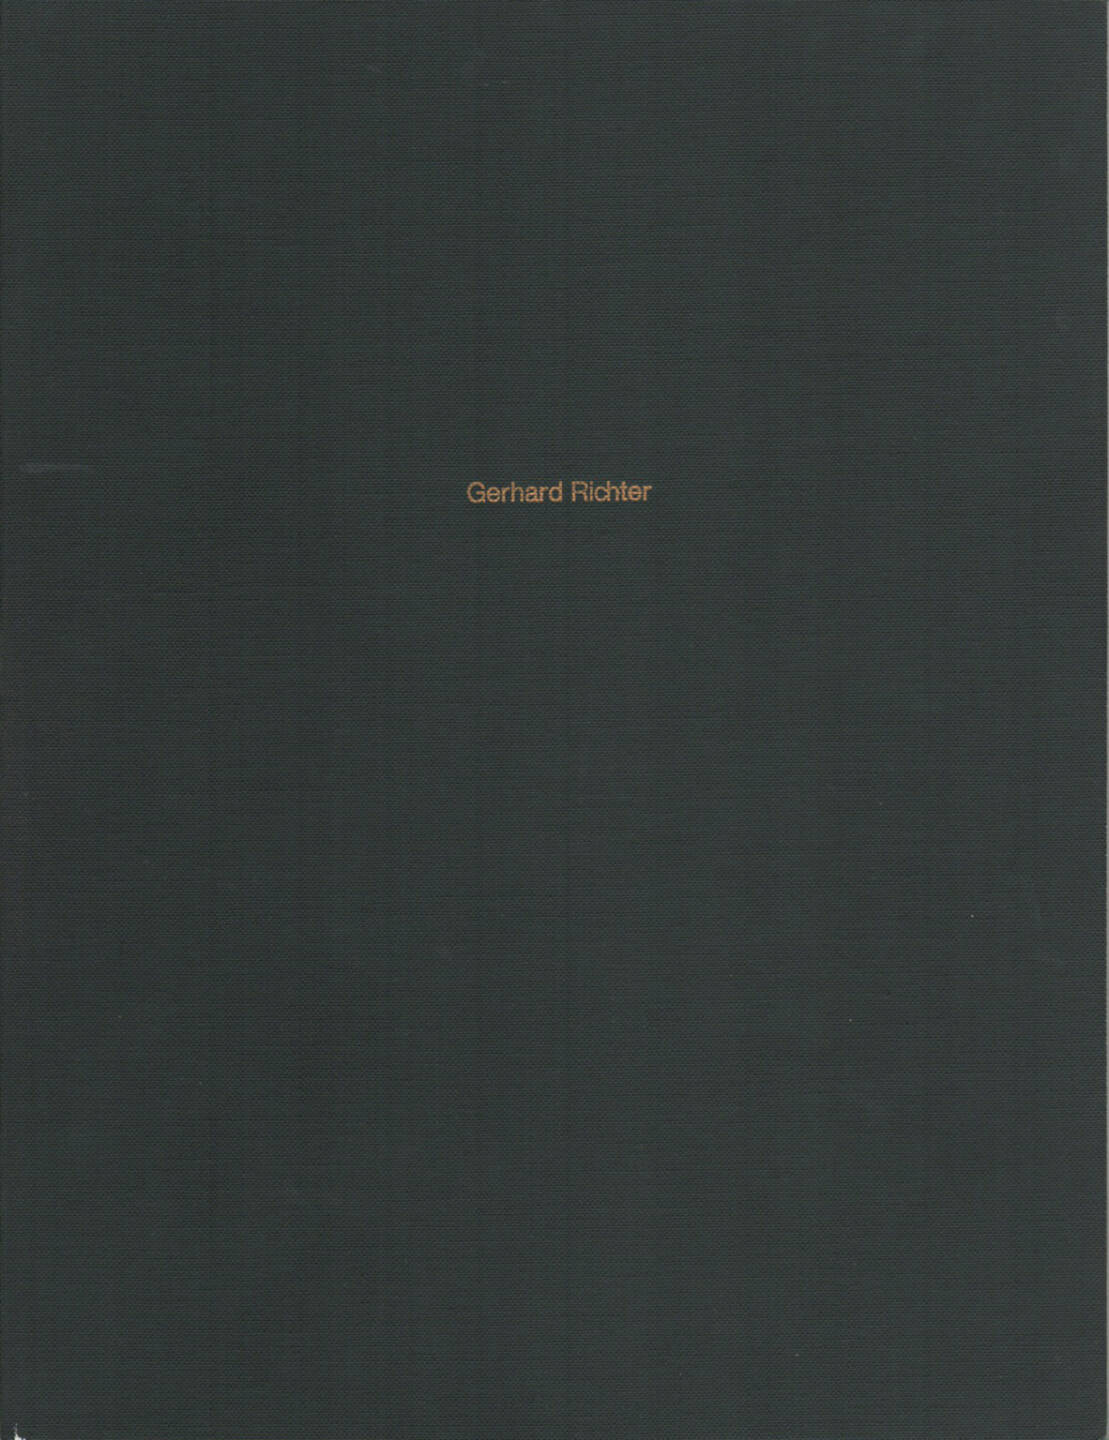 Gerhard Richter - Gerhard Richter, Museum Folkwang 1972, Cover - http://josefchladek.com/book/gerhard_richter_-_gerhard_richter